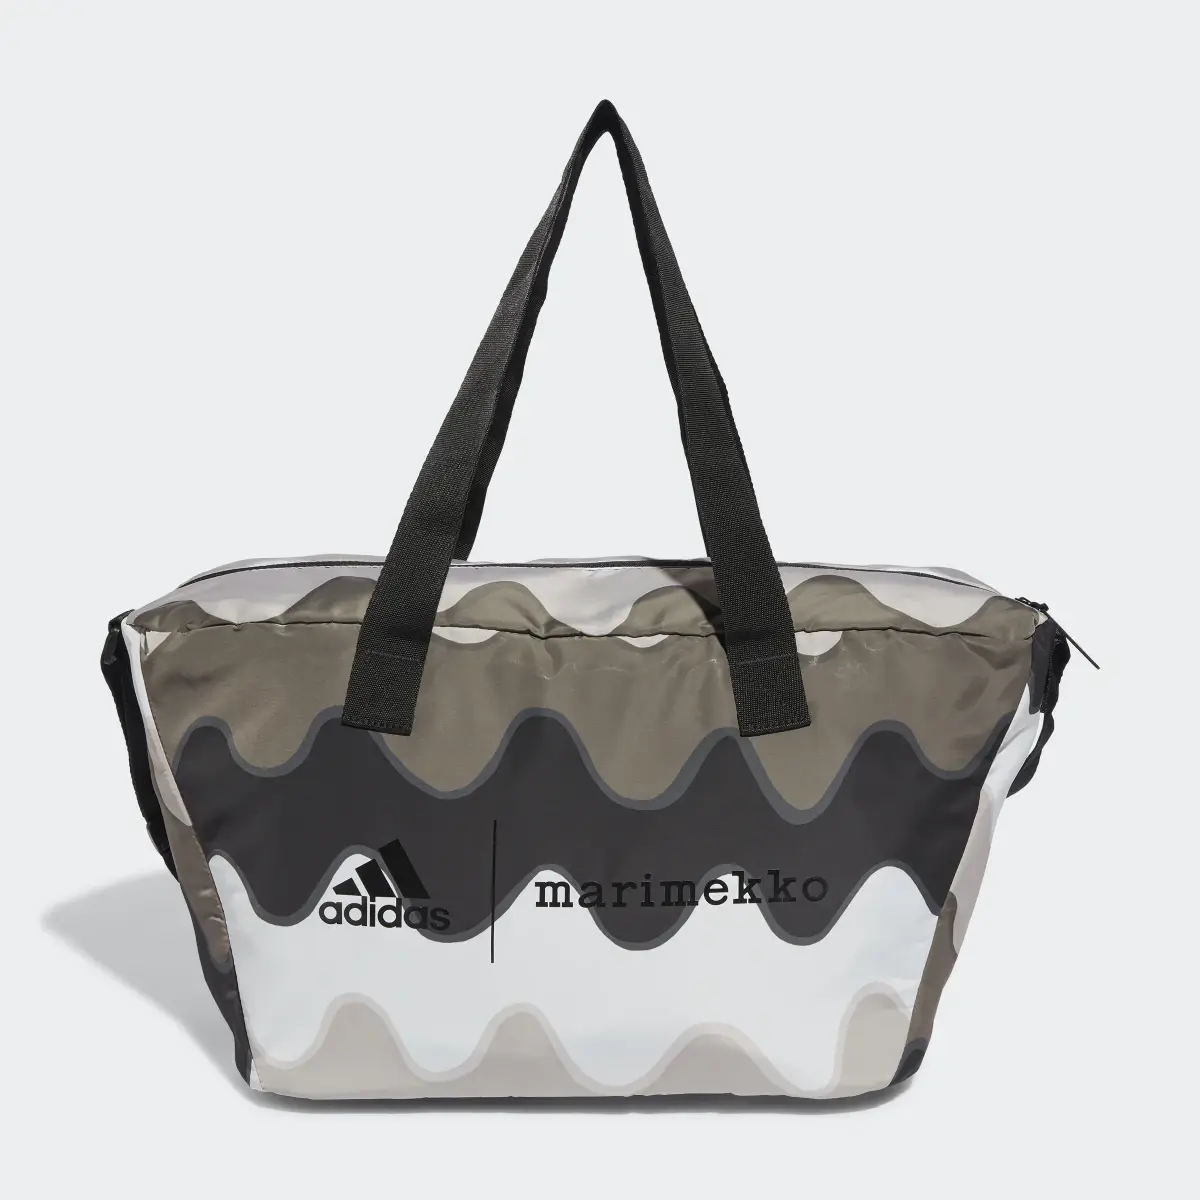 Adidas x Marimekko Shopper Designed to Move Training Bag. 2